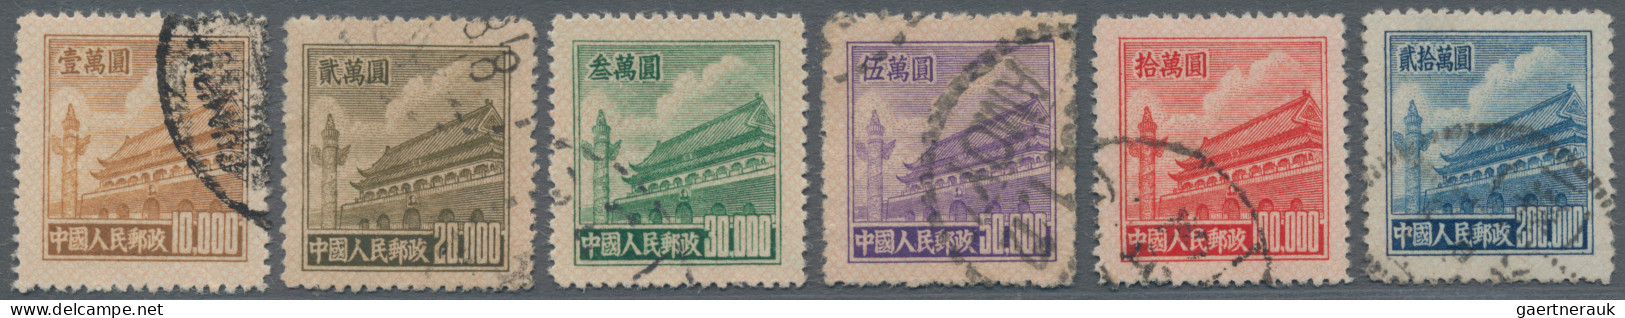 China (PRC): 1951, Tien An Men 5th Issue Set (R5), Used, $200.000 Slight Corner - Gebruikt